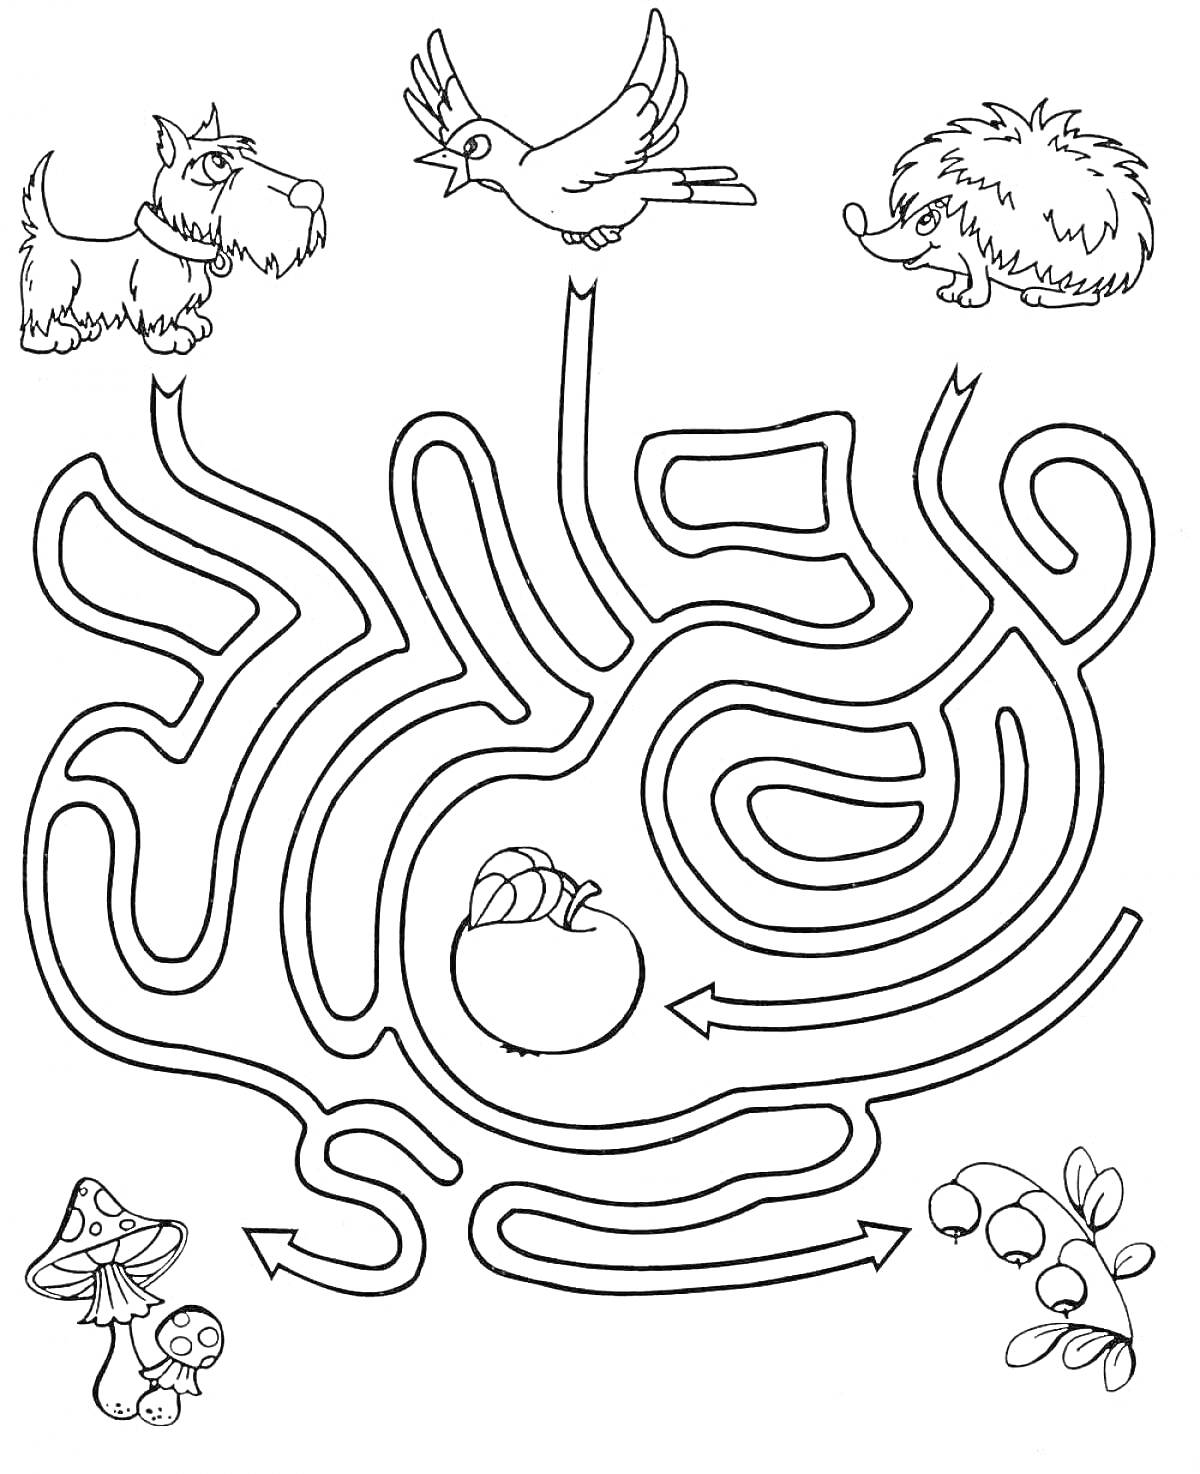 Раскраска Лабиринт с собакой, птицей, ежом, яблоком, грибами и ягодами